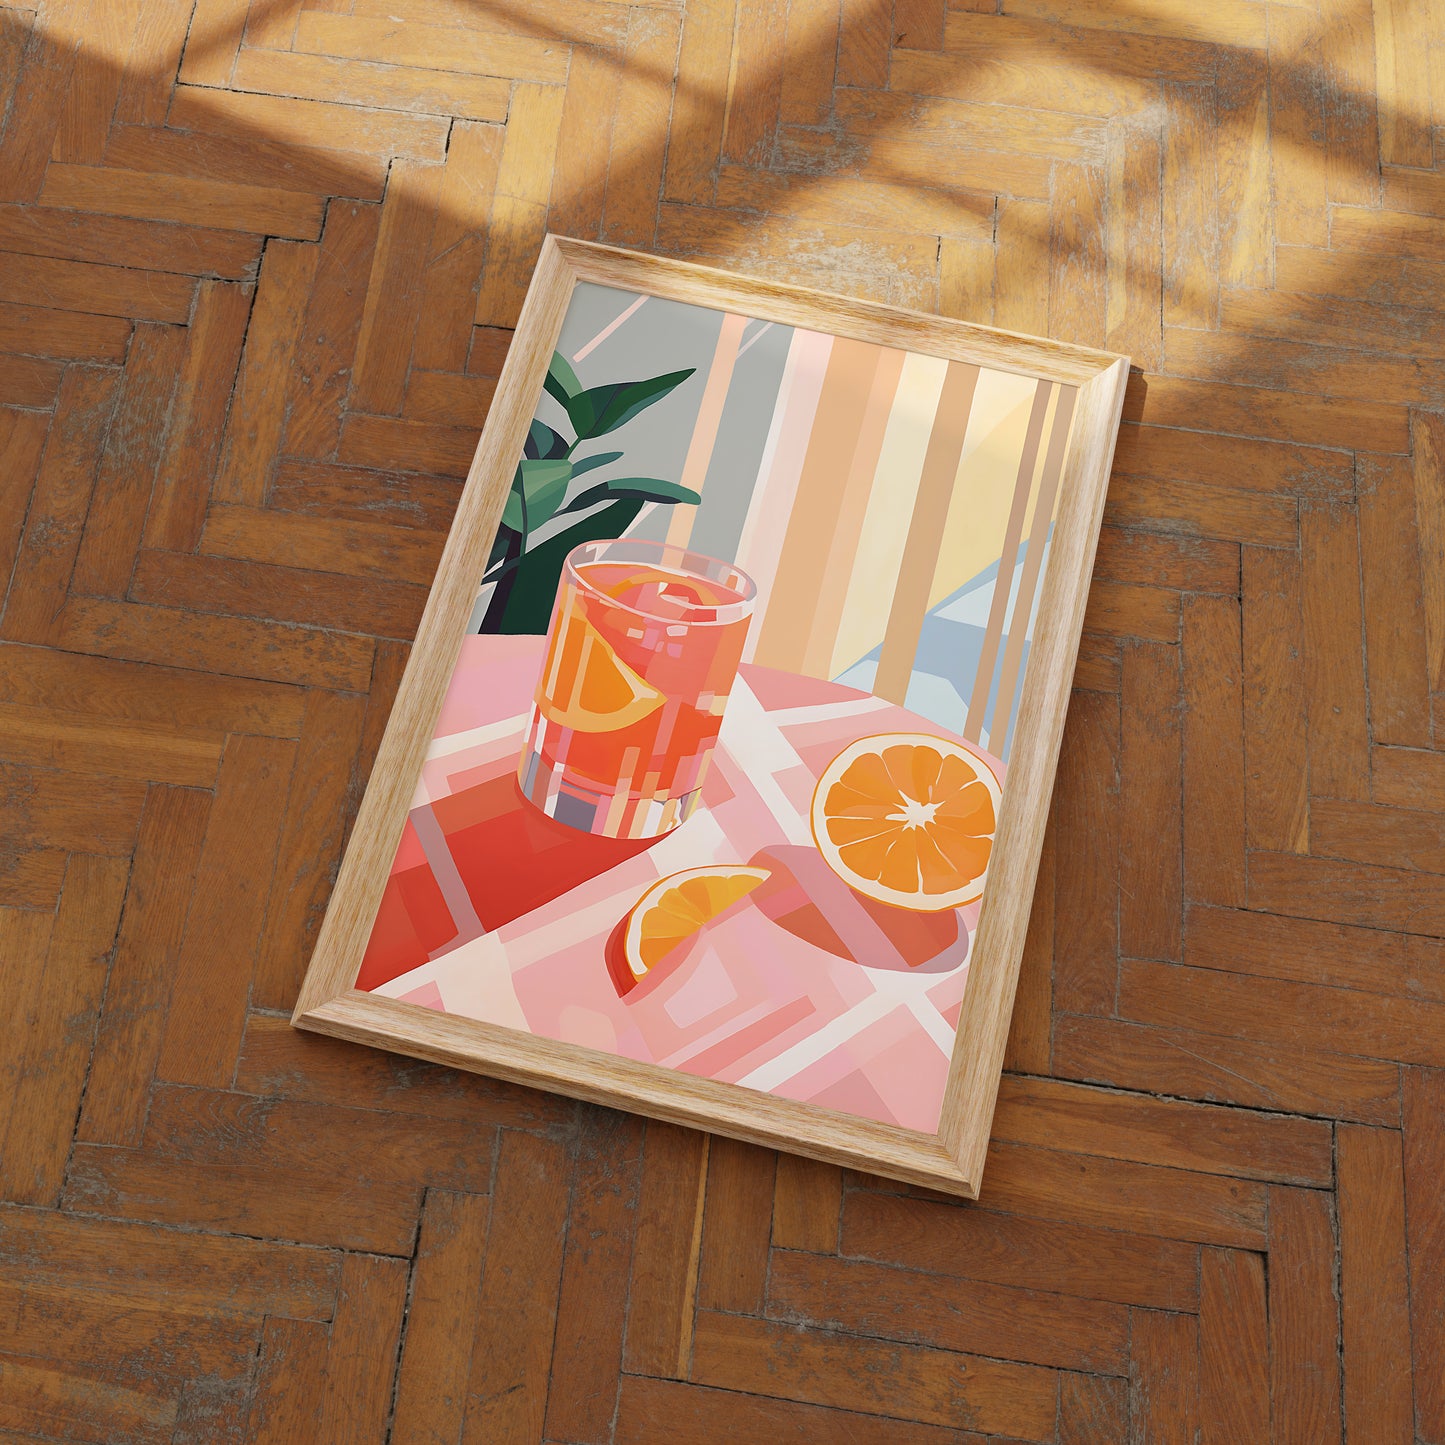 Framed artwork of a sliced orange and a drink on a wooden floor.